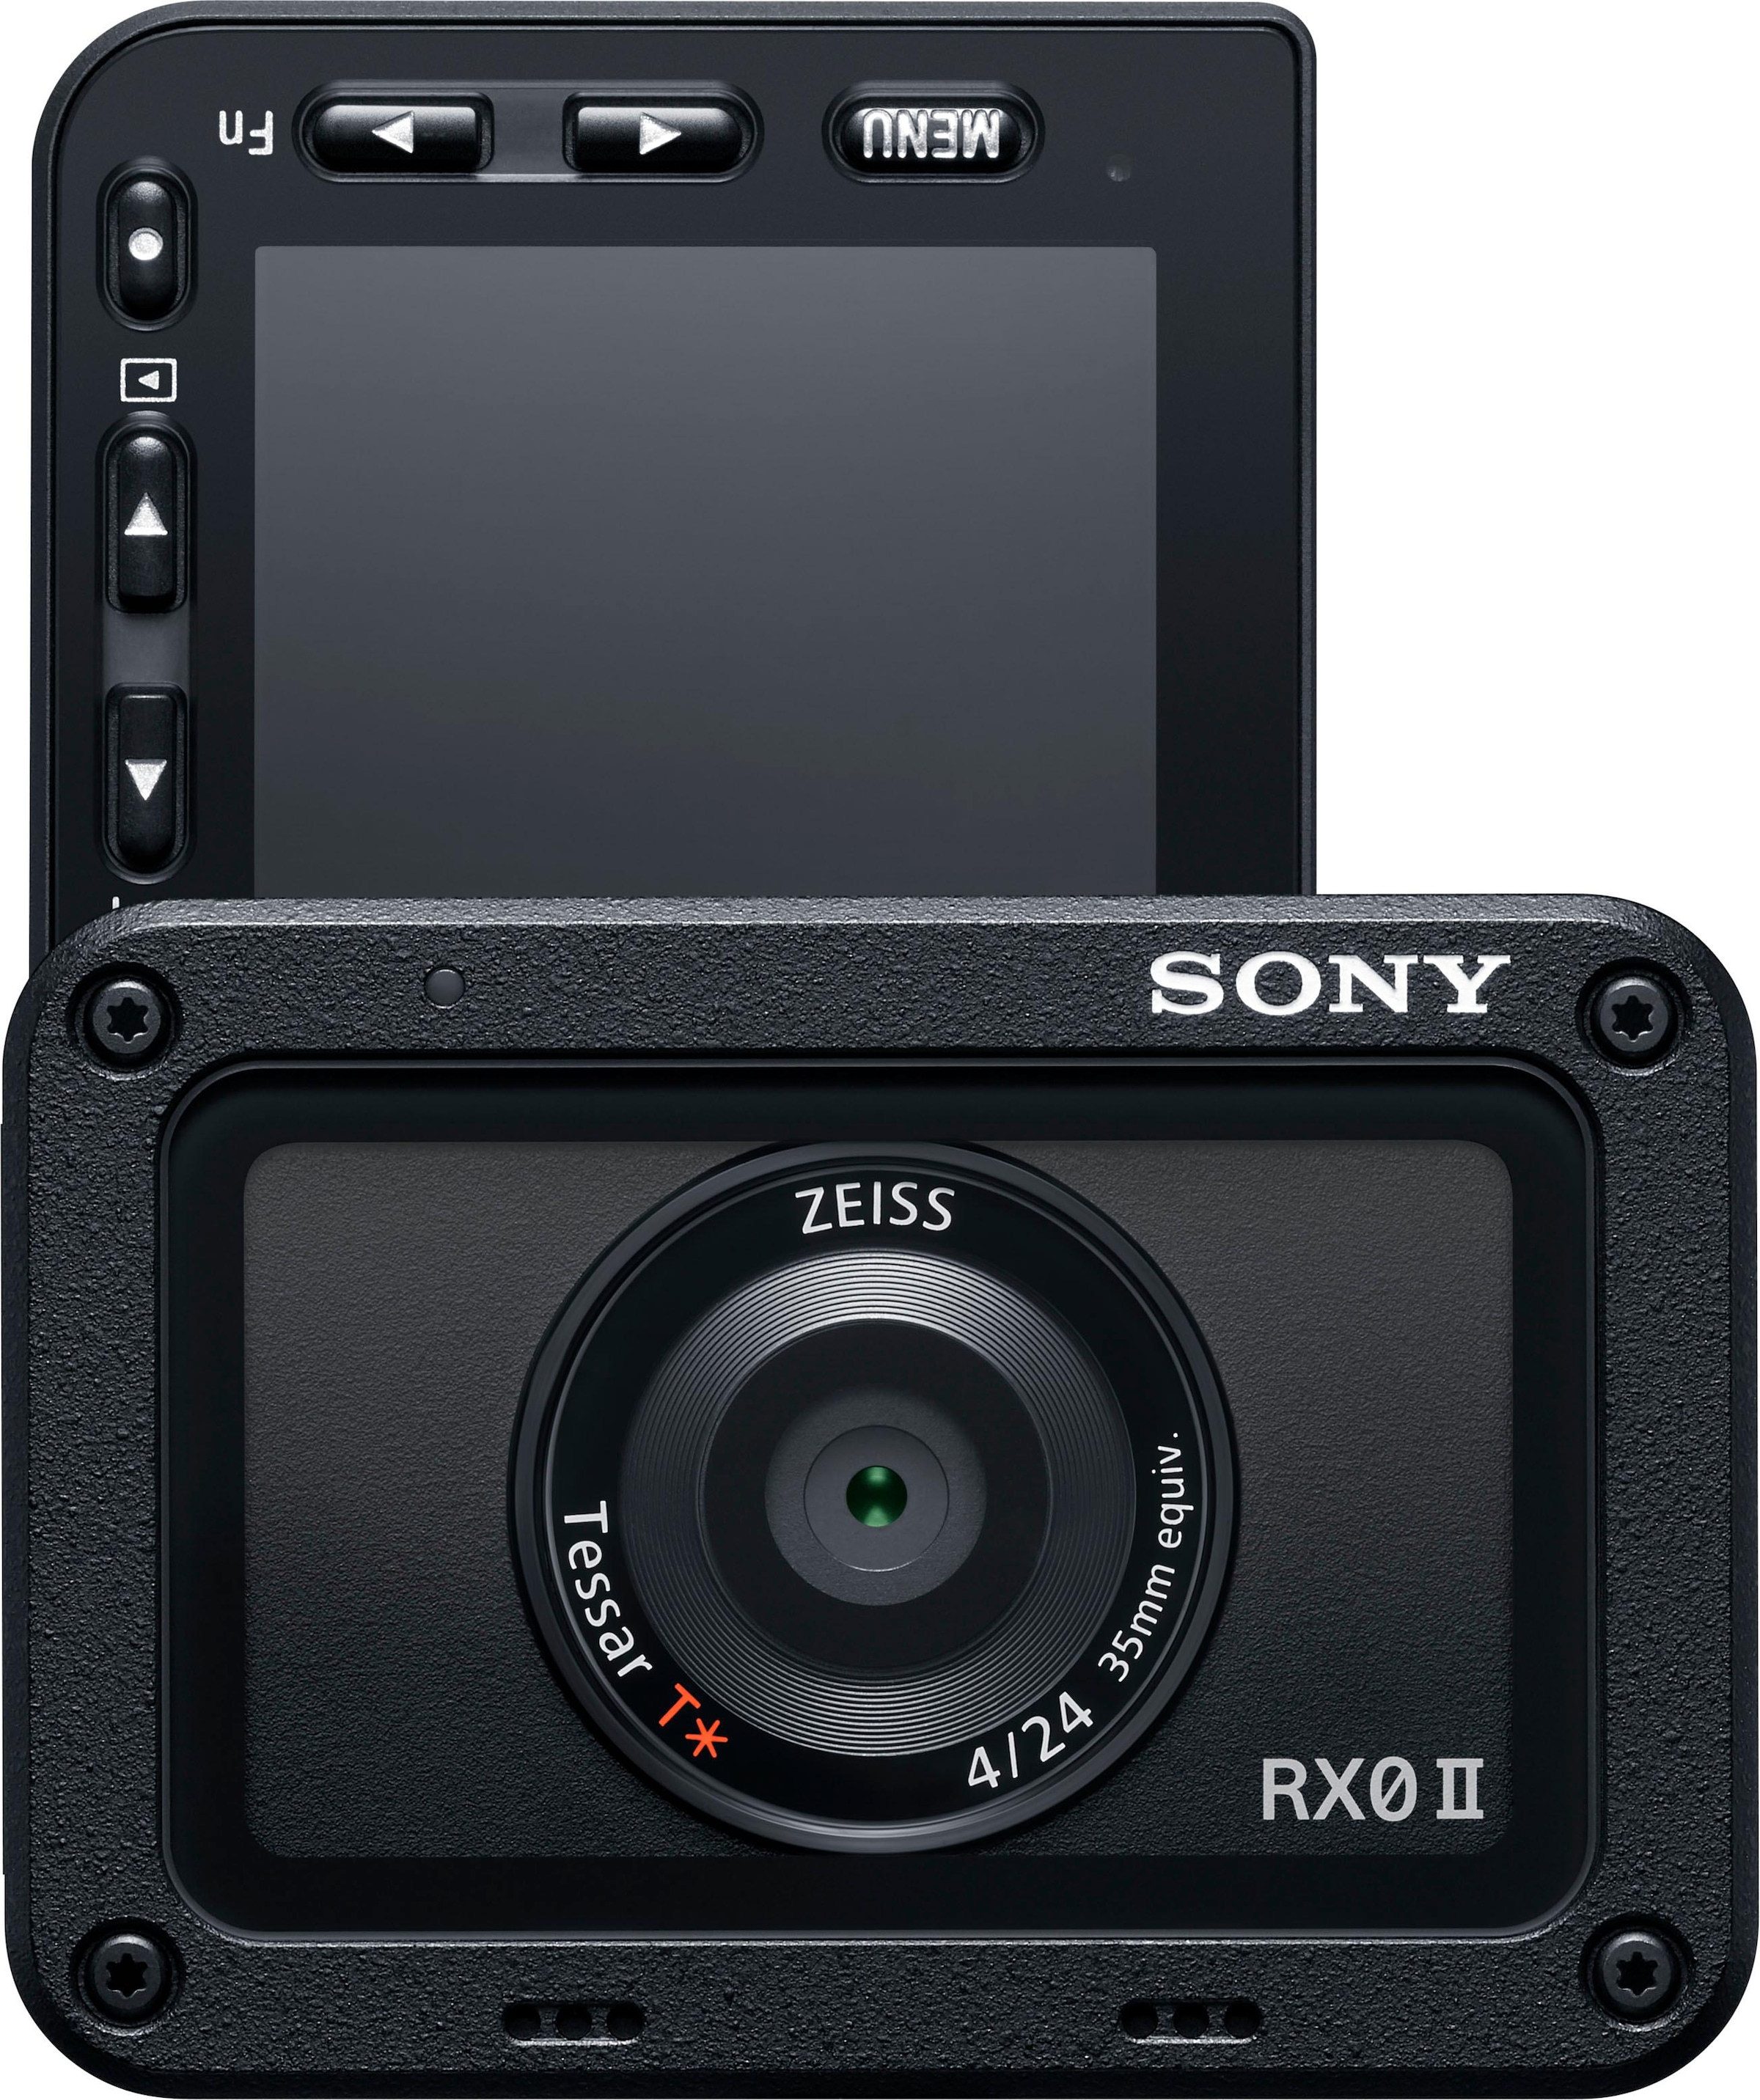 Kompaktkamera »RX0 II (DSC-RX0M2G)«, ZEISS® Tessar T* 24-mm, 15,3 MP, Bluetooth-WLAN...